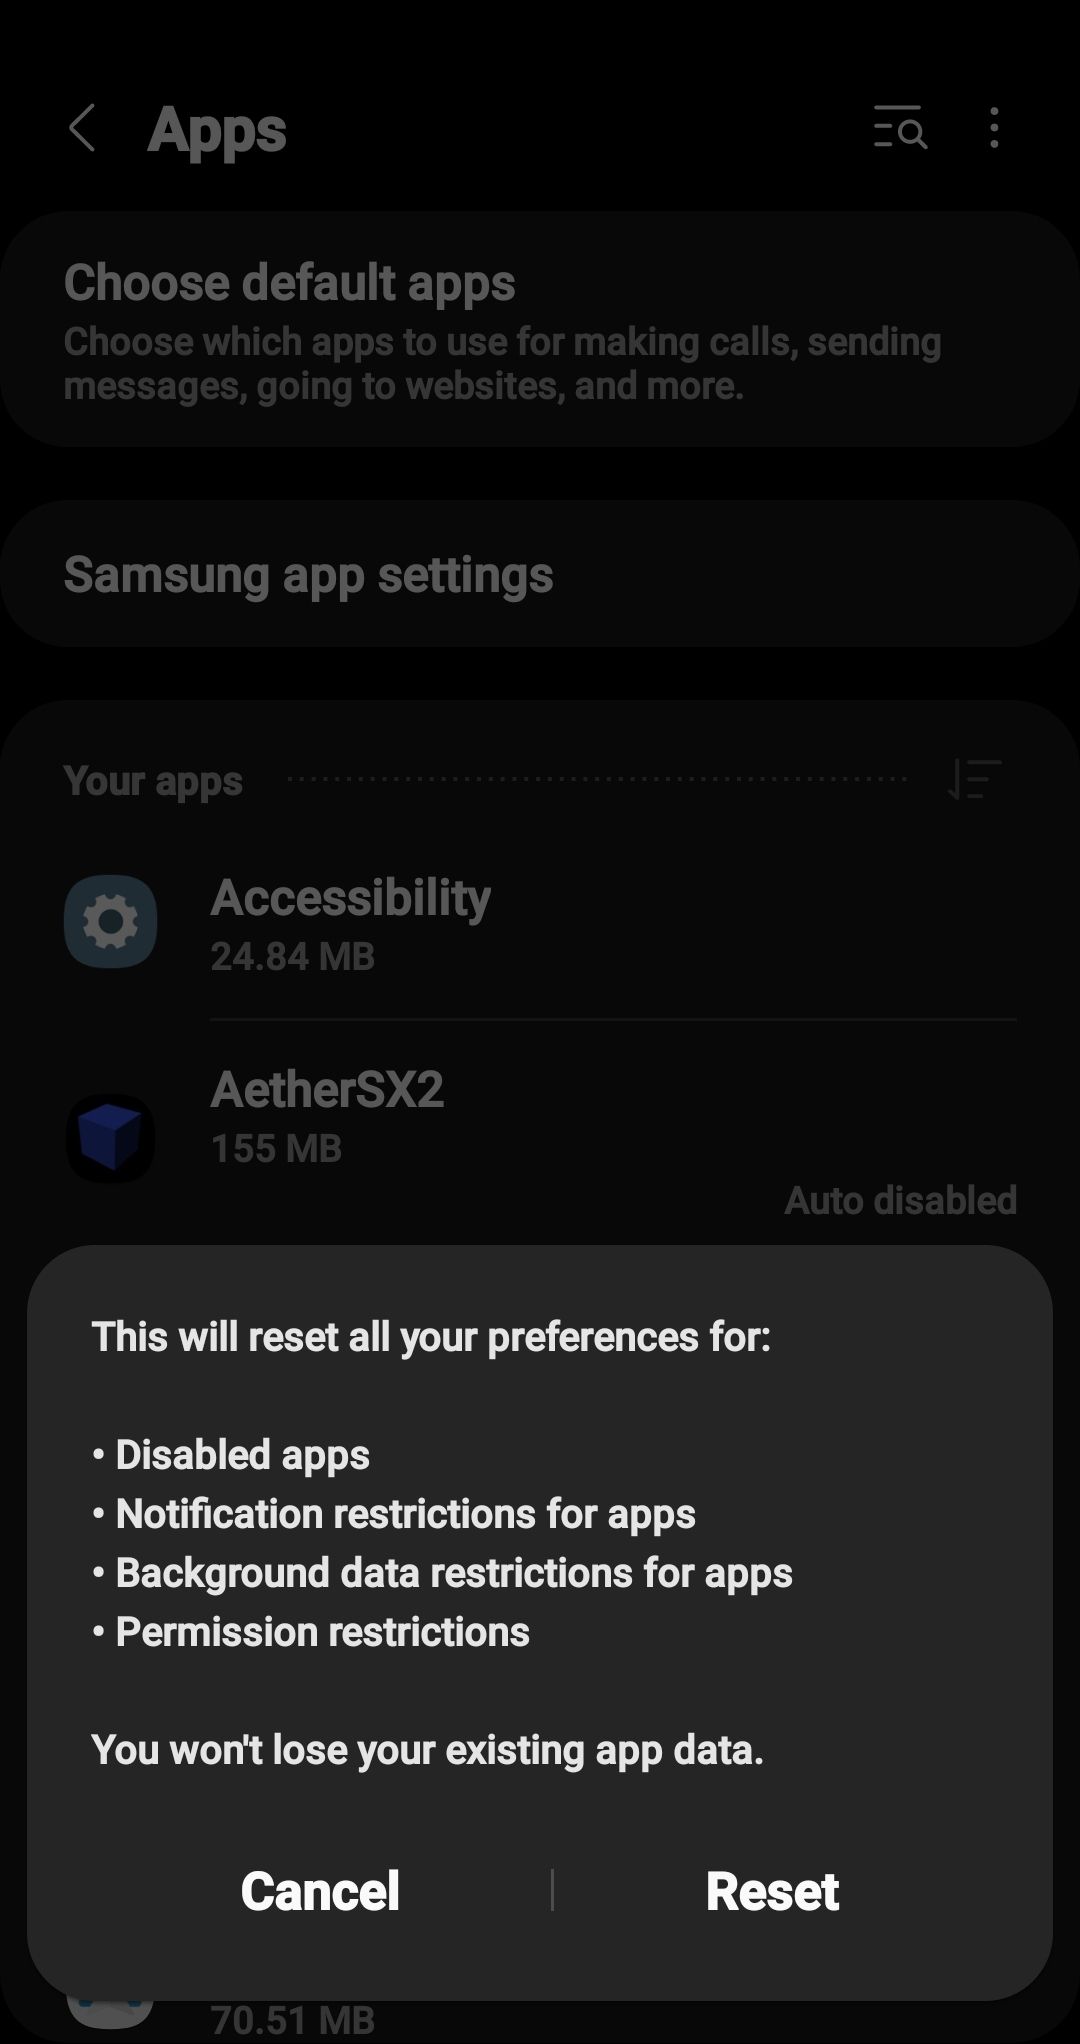 Captura de tela do prompt de redefinição do aplicativo Android Galaxy S 10 